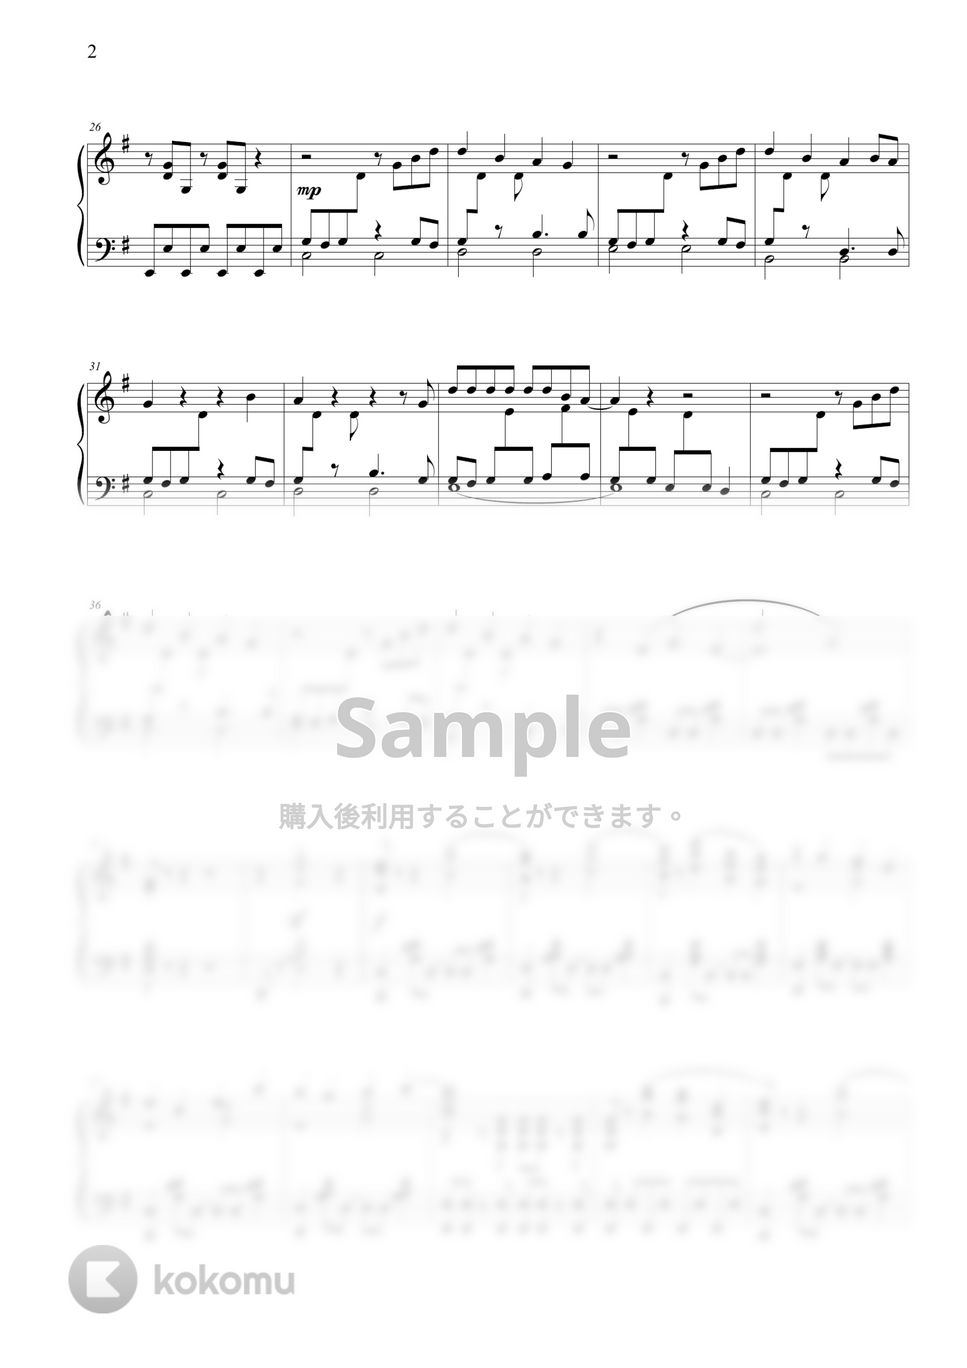 ヨルシカ - 又三郎 by THIS IS PIANO